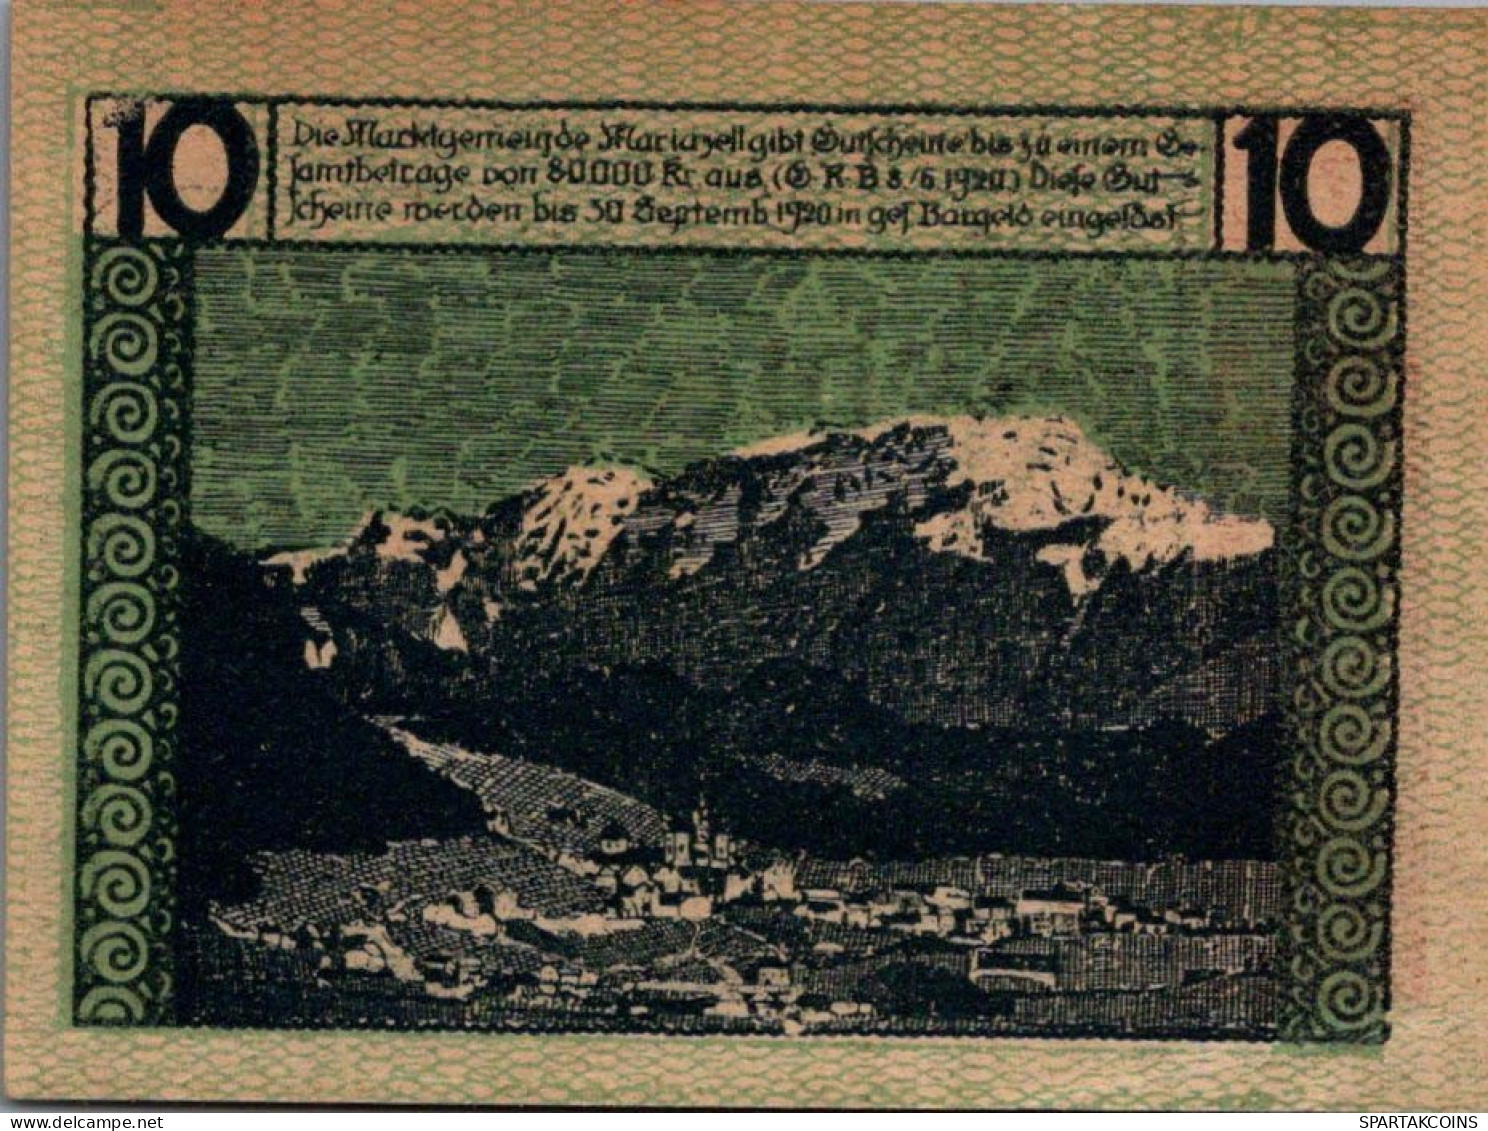 10 HELLER 1920 Stadt MARIAZELL Styria Österreich Notgeld Papiergeld Banknote #PG932 - [11] Local Banknote Issues